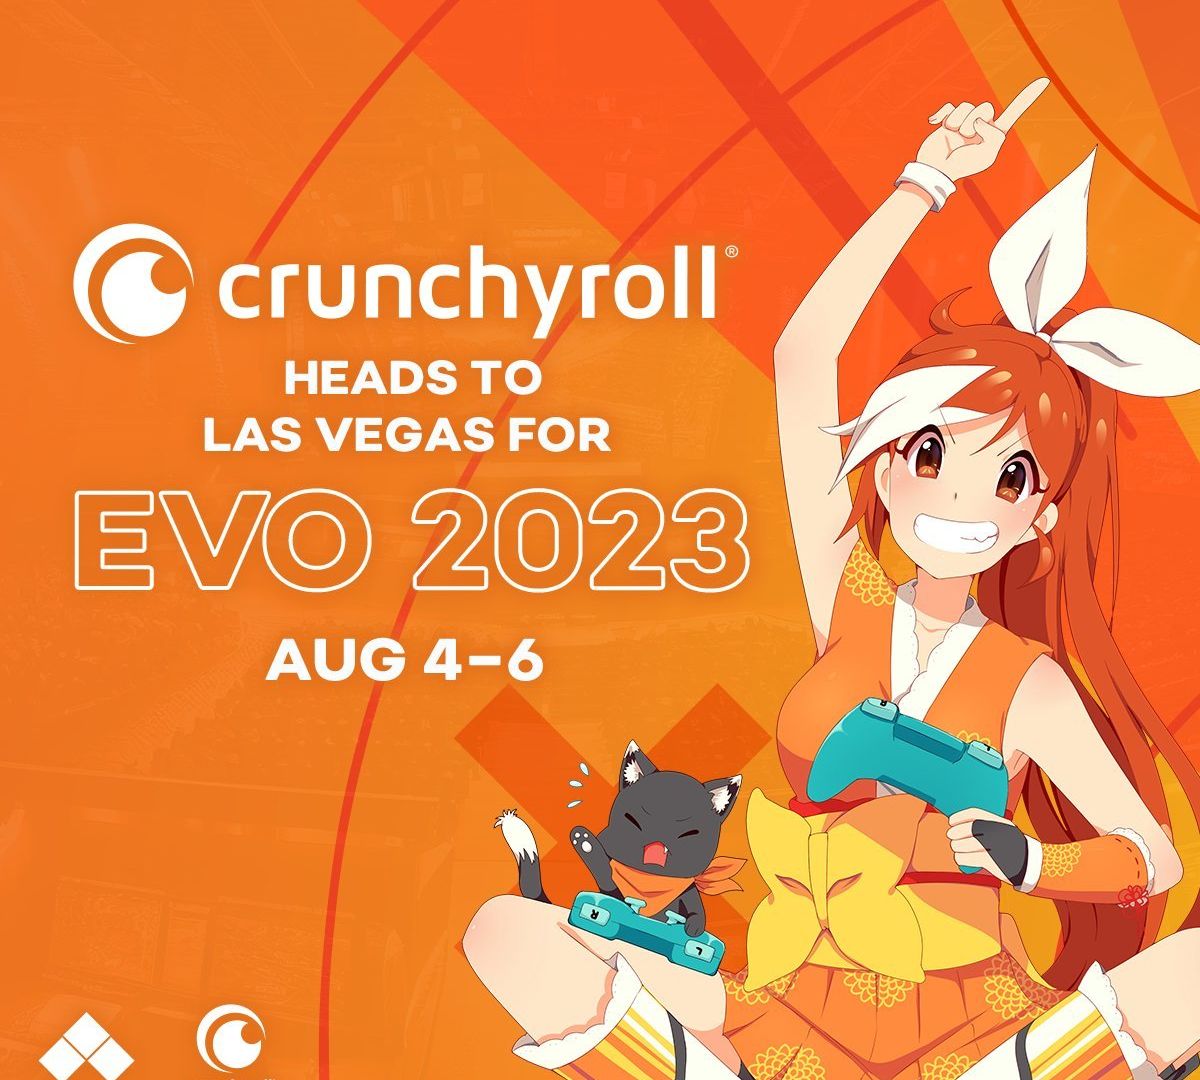 Crunchyroll va collaborer avec Evo 2023